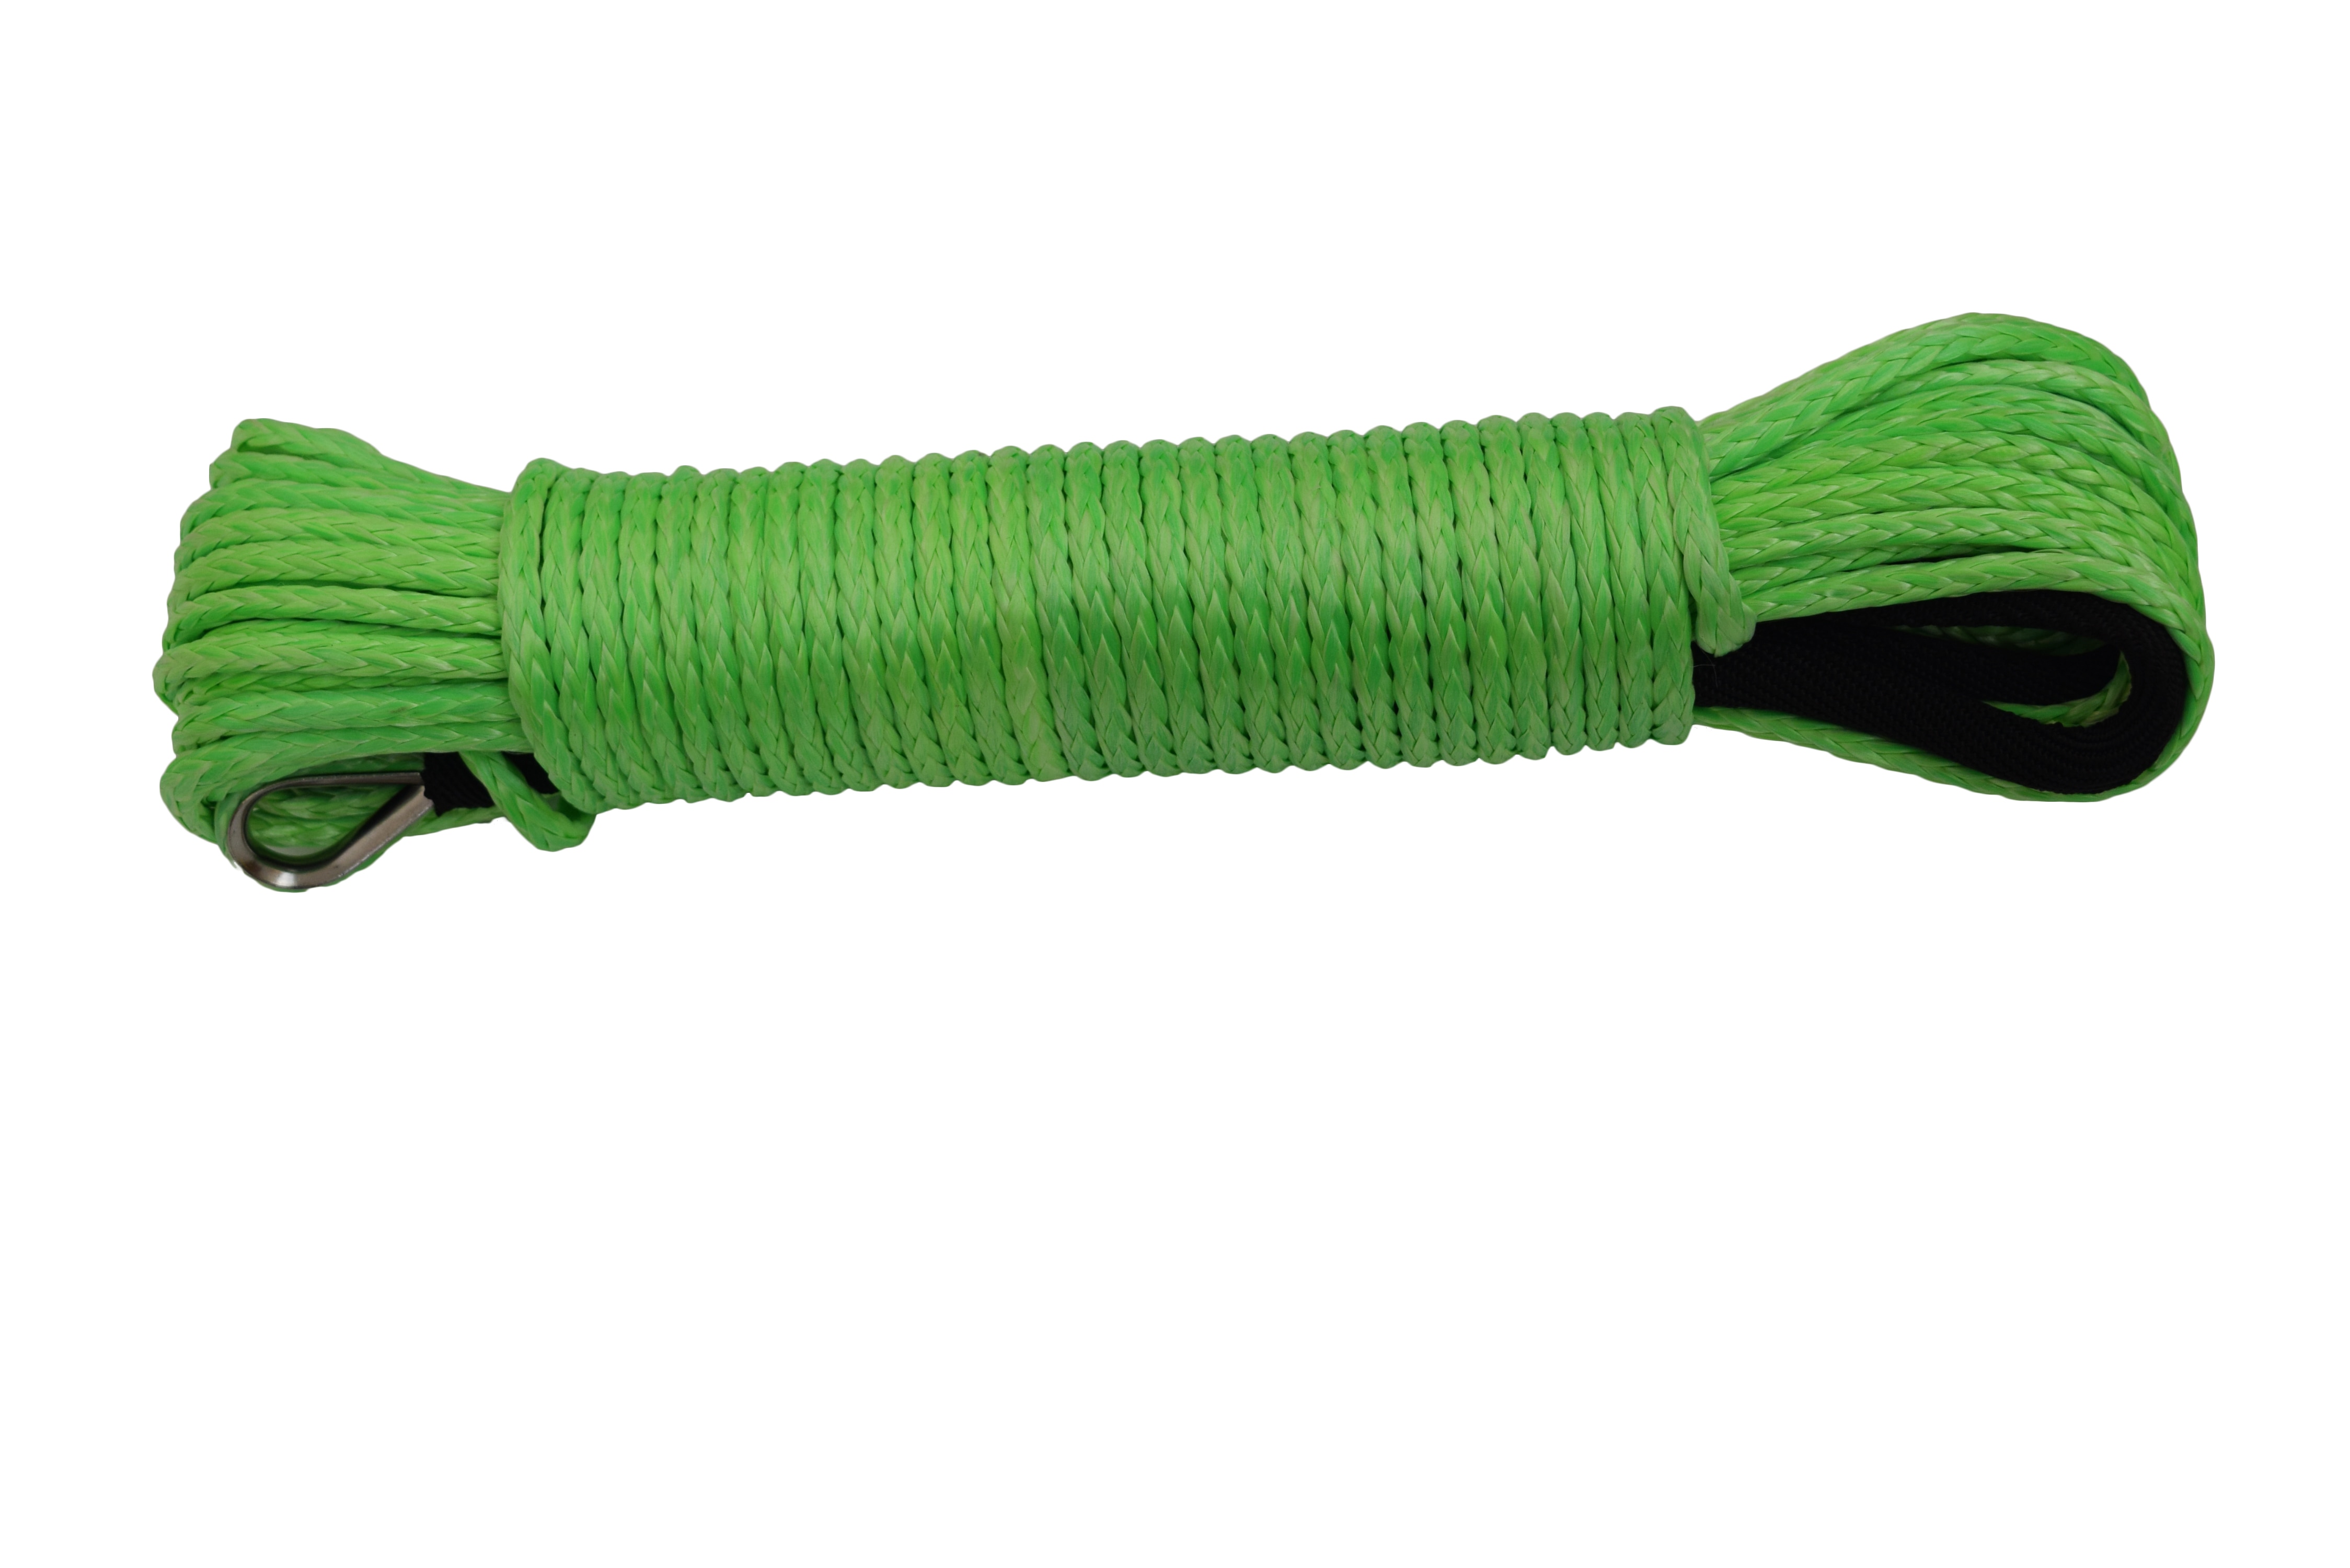 Grün 5mm * 15m Synthetische Winde Seil, ATV Winde Linie, Plasma Seil, ATV Winde Kabel, Abschleppen Seil, Kevlar Seil